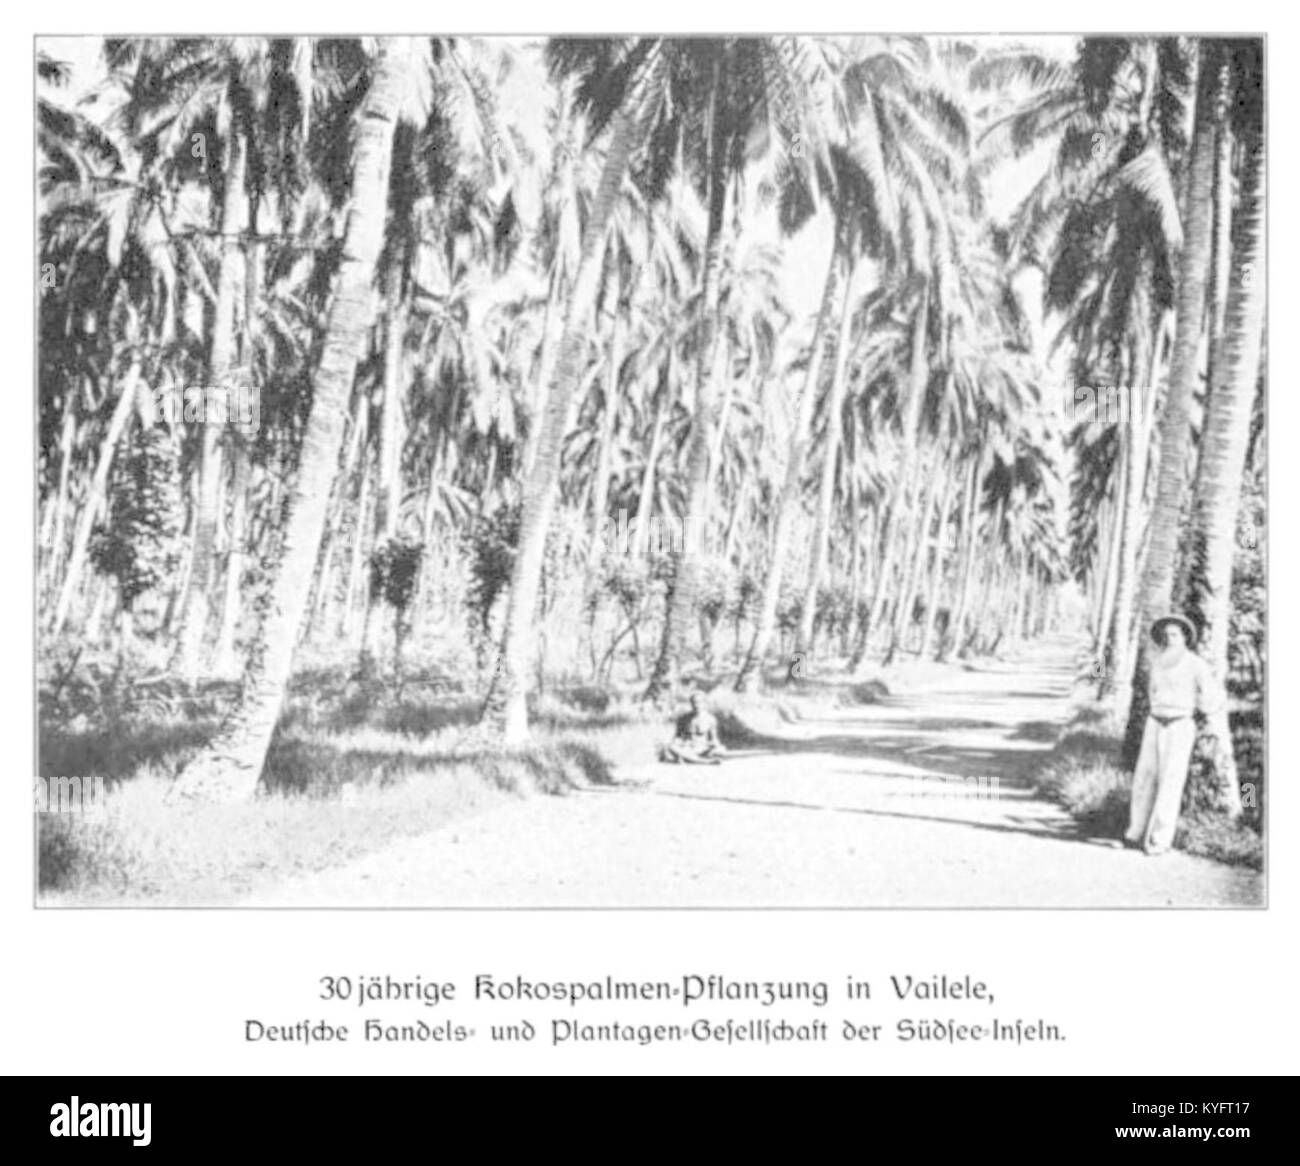 WOHLTMANN(1904) p102 - 30-jährige Kokospalmen-Pflanzung in Vailele, Deutsche Handels- und Plantagengesellschaft der Südsee-Inseln Stock Photo